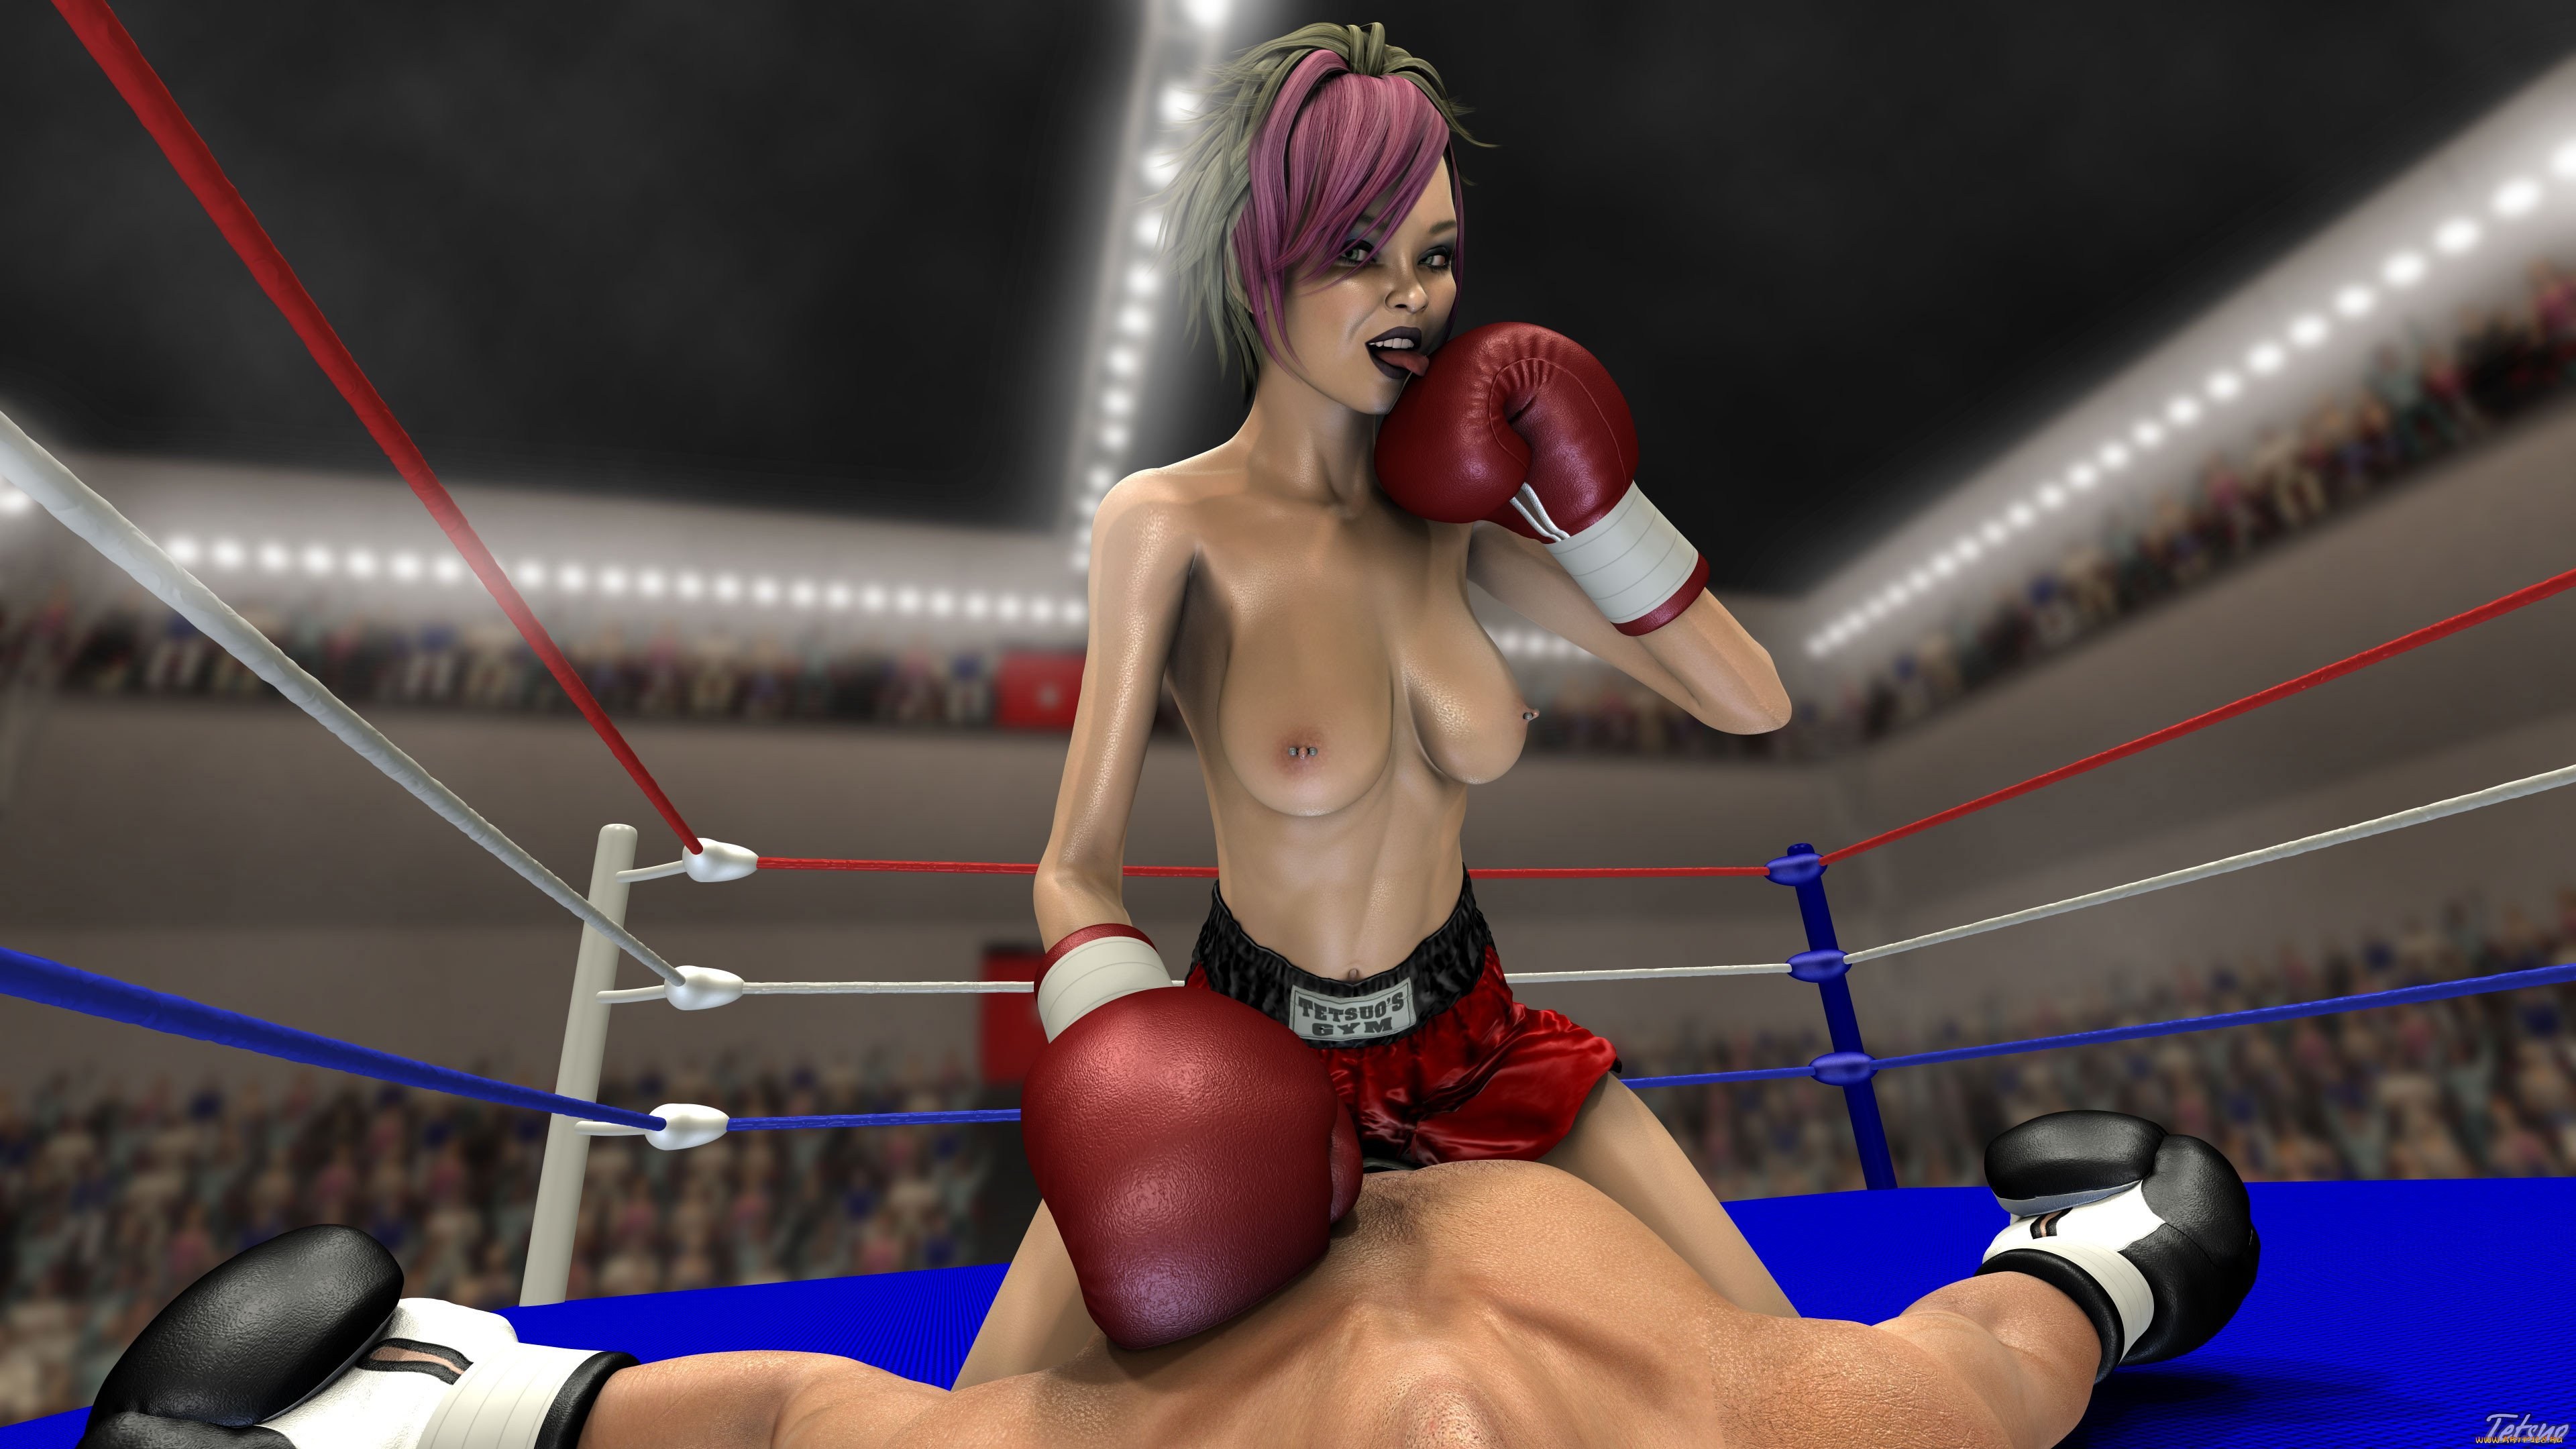 3840px x 2160px - Boxing Girl (95 photos) - porn ddeva